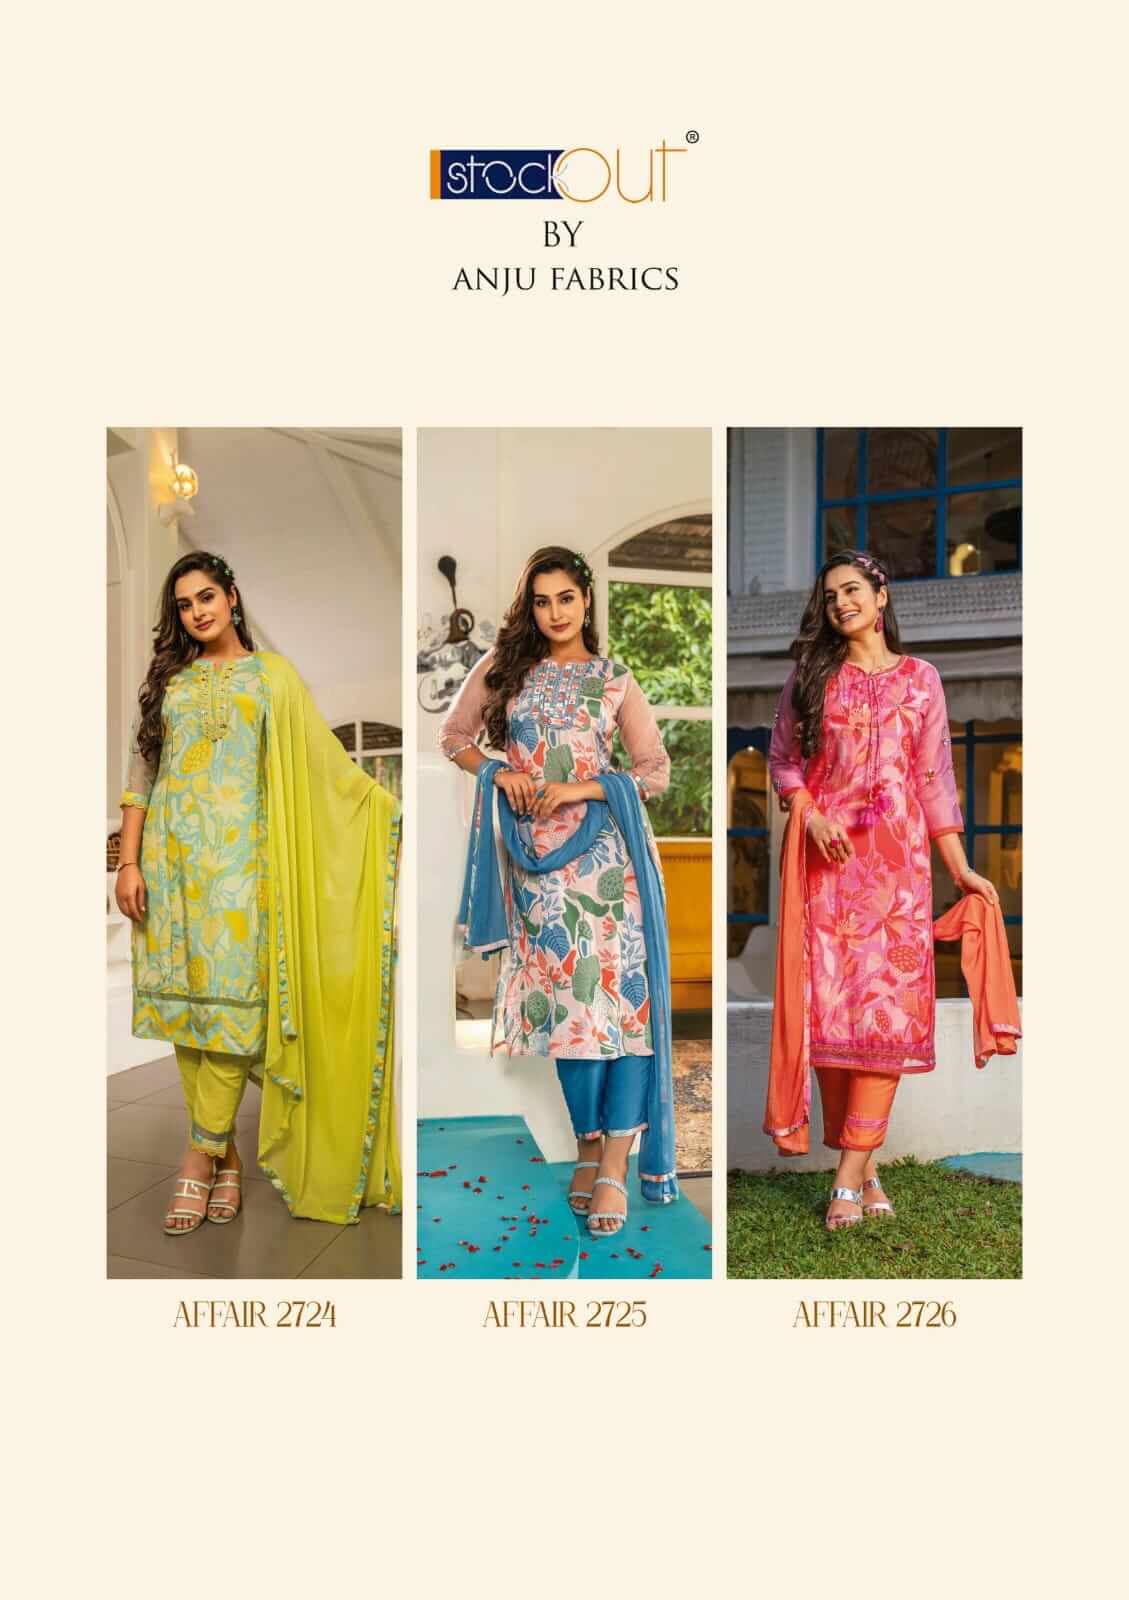 Anju Fabrics Affair Printed Salwar Kameez Catalog collection 12